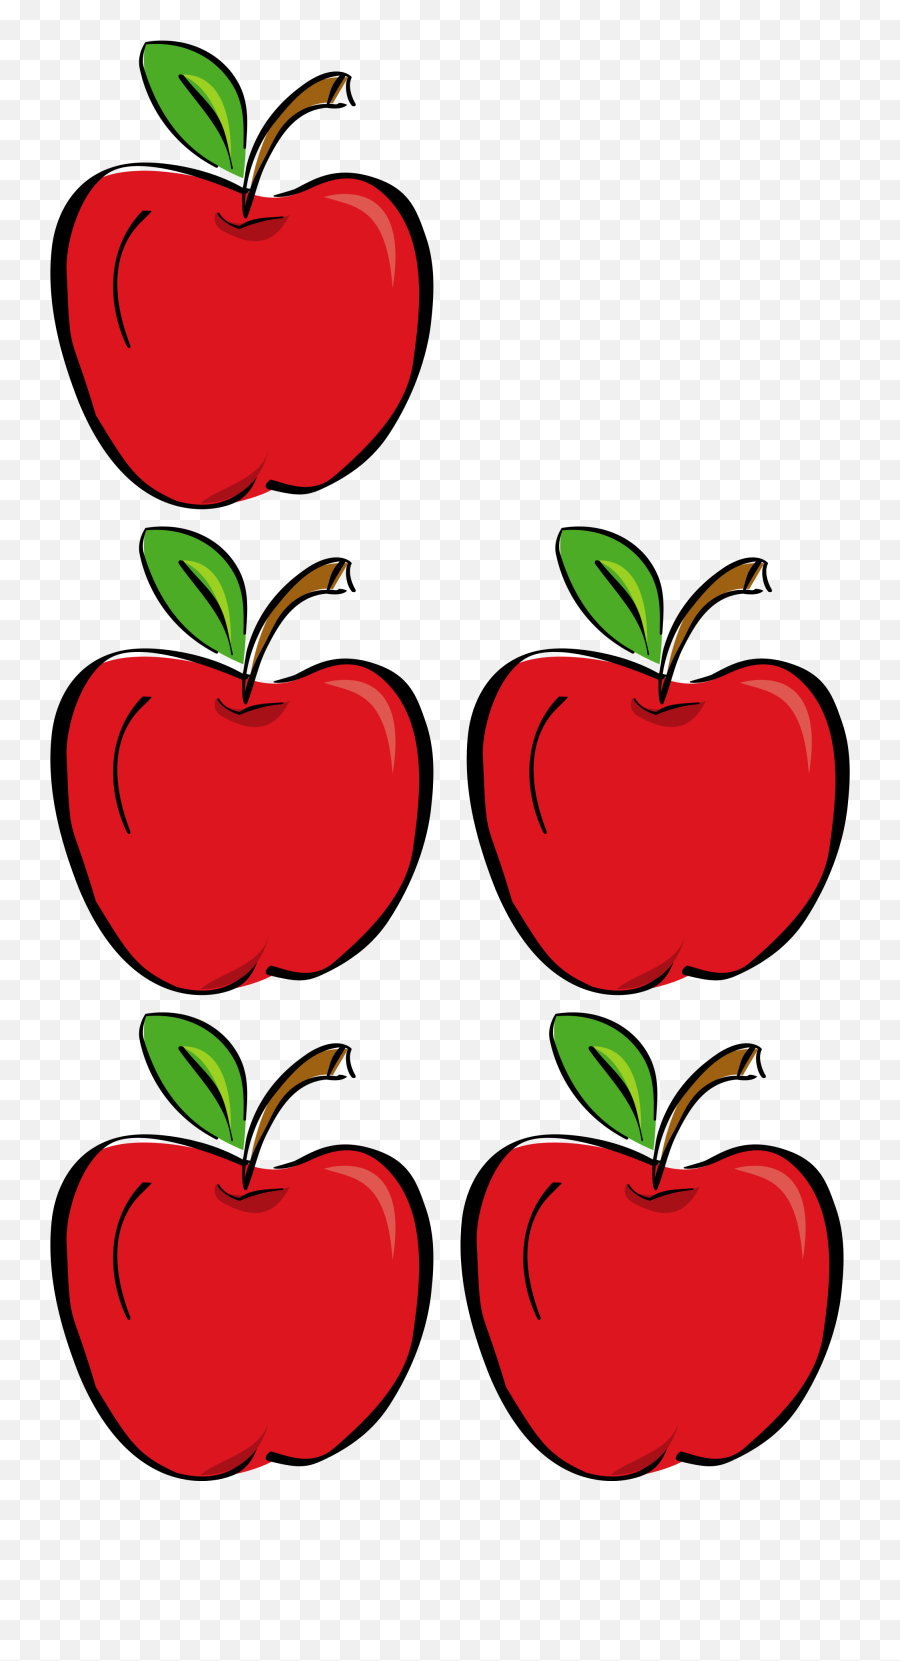 Free Photo Five Apples - Apples Diet Five Free Download Conjuntos De 5 Elementos Png,Apple Clipart Transparent Background